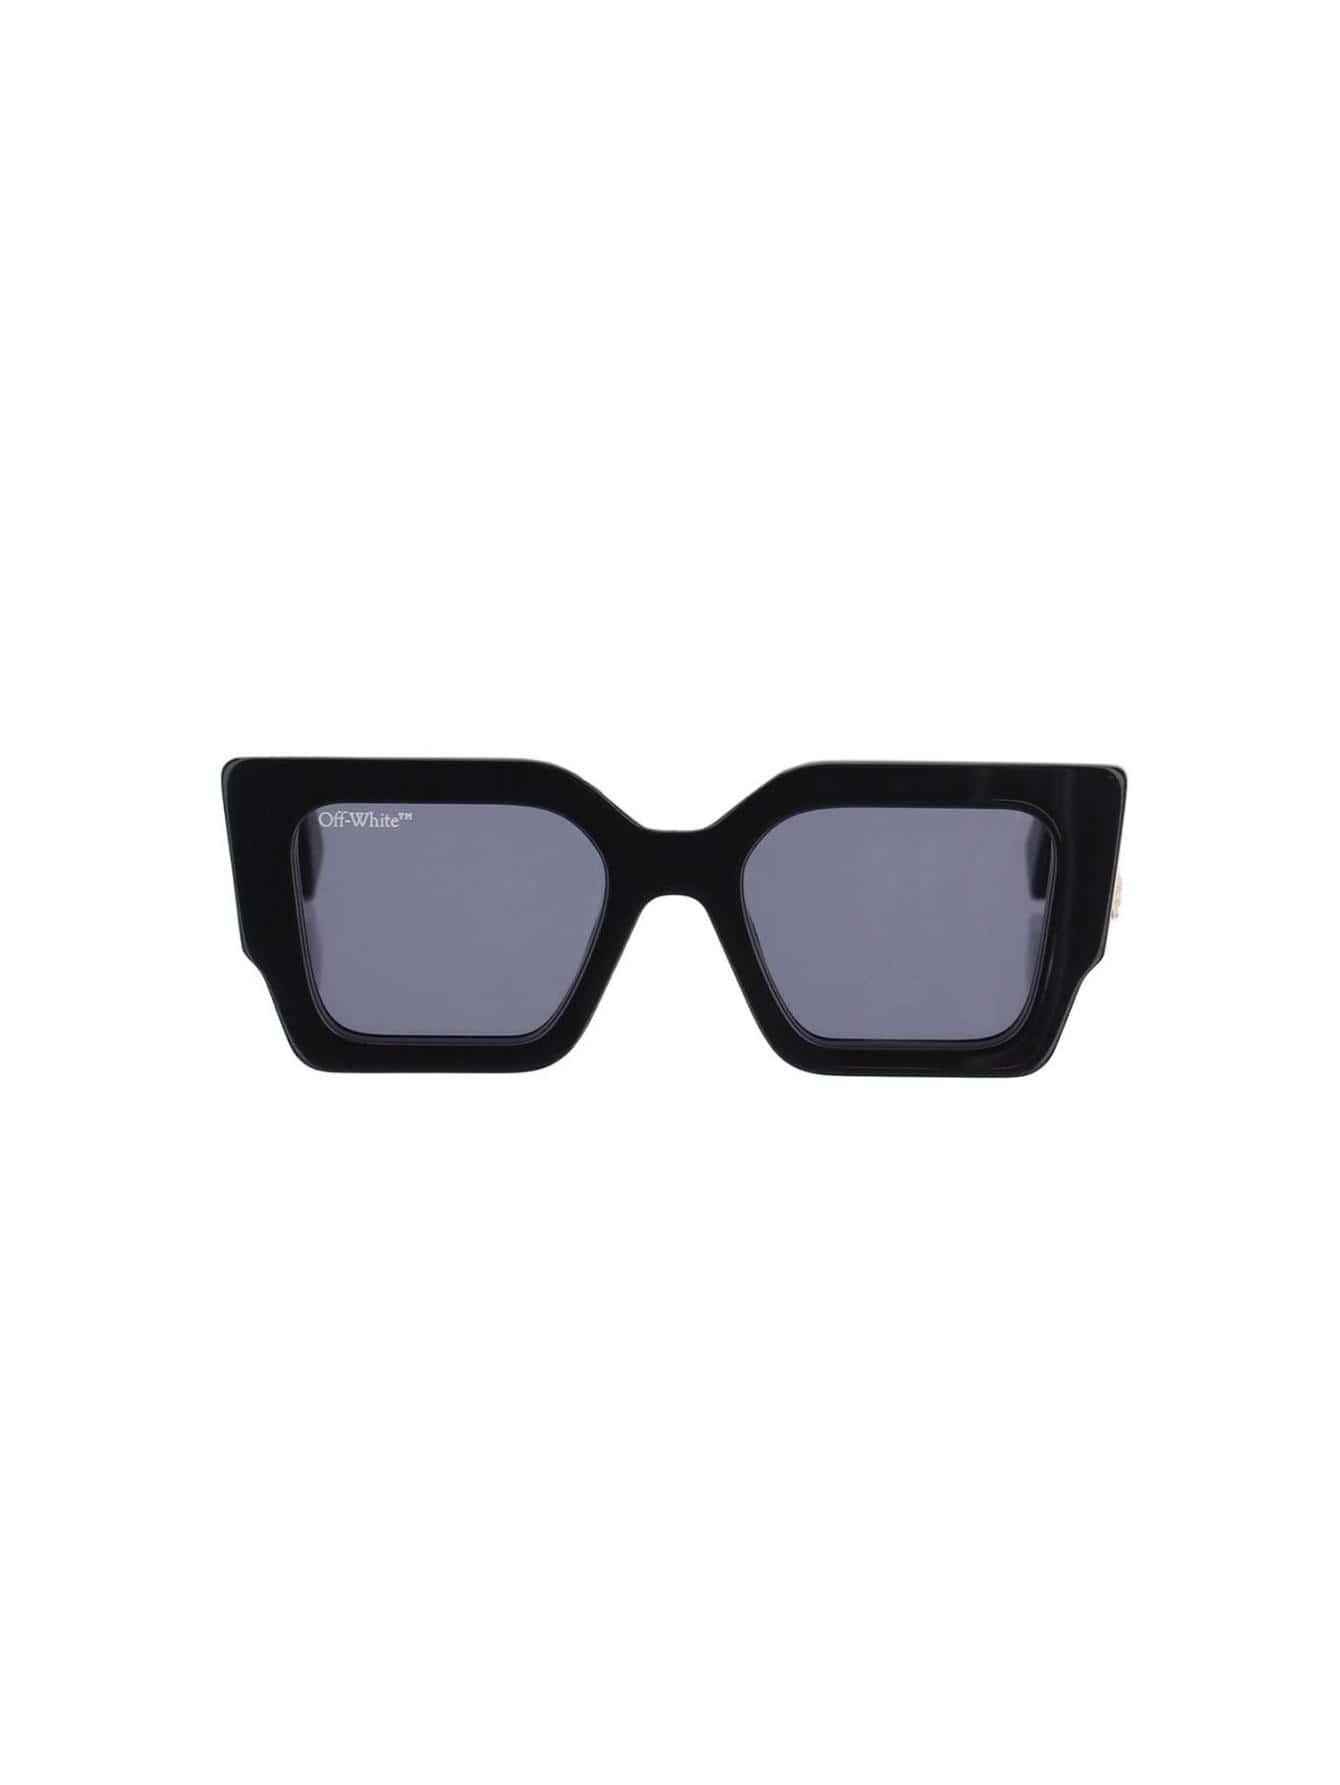 черные солнцезащитные очки prescott off white Женские солнцезащитные очки Off-White ЧЕРНЫЕ OERI003C99PLA0011007, черный